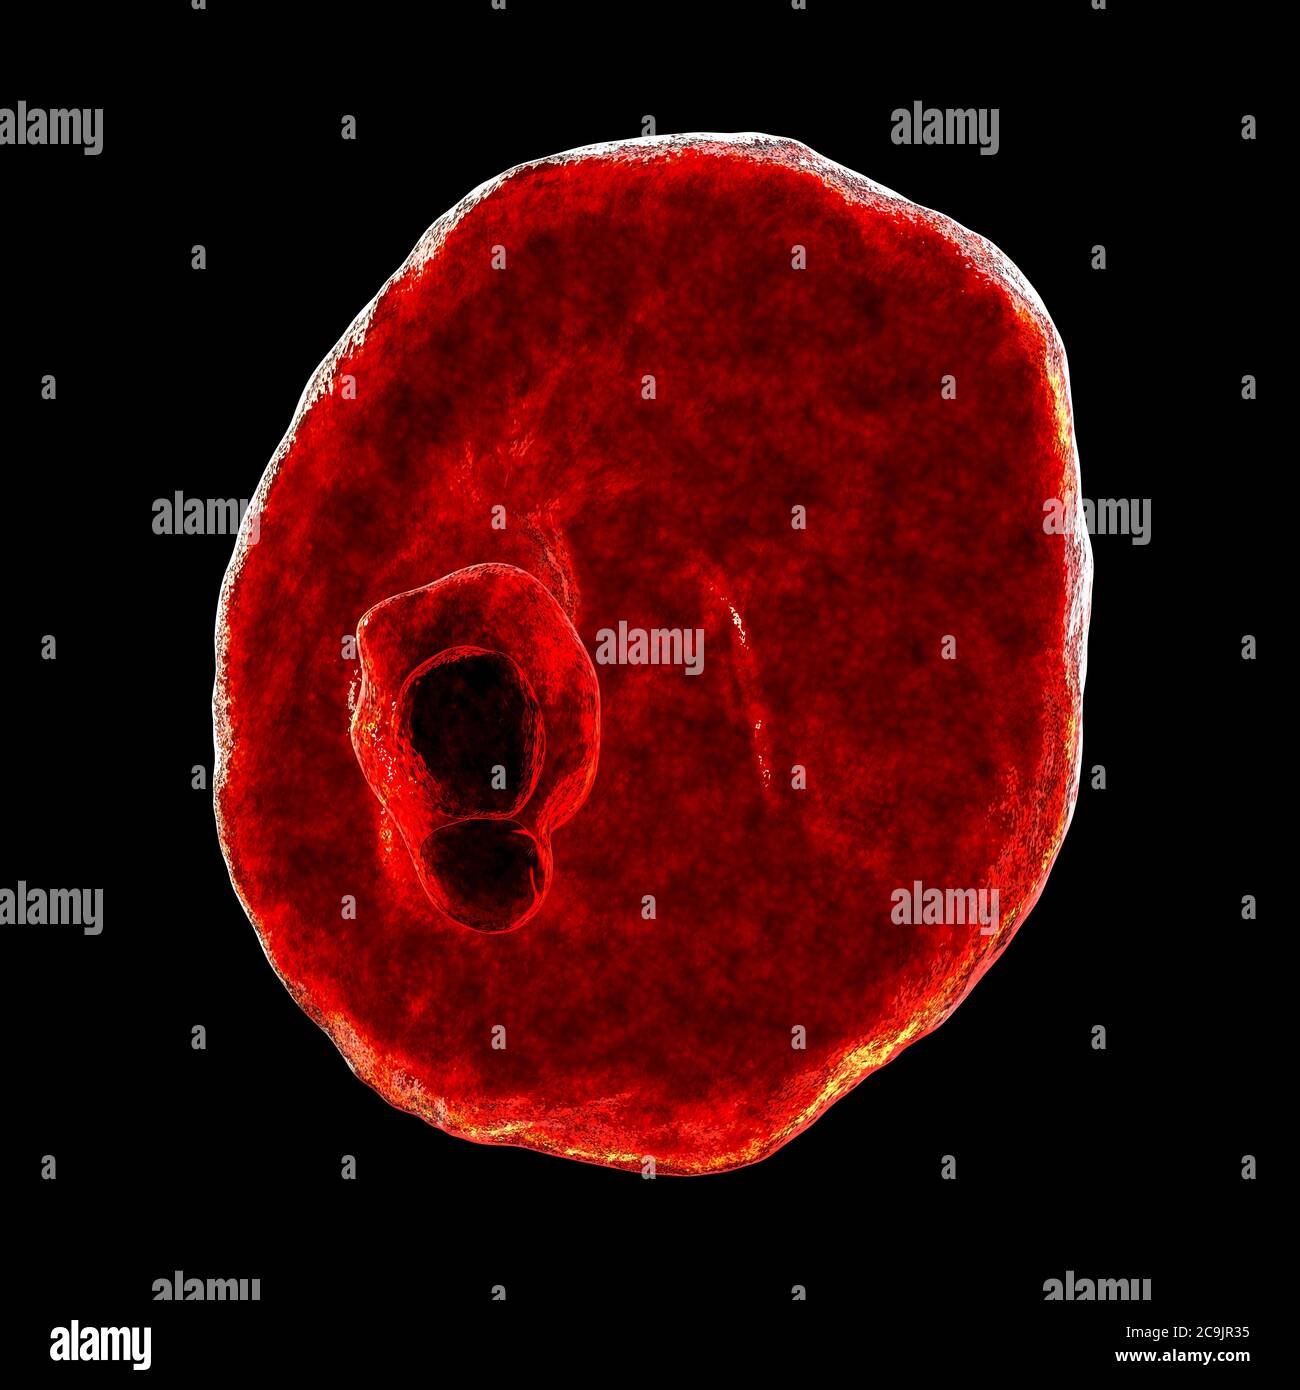 Plasmodium ovale protozoan innerhalb der roten Blutkörperchen, Computer-Illustration. P. ovale ist der Erreger der gutartigen tertianischen Malaria, auch oval genannt Stockfoto